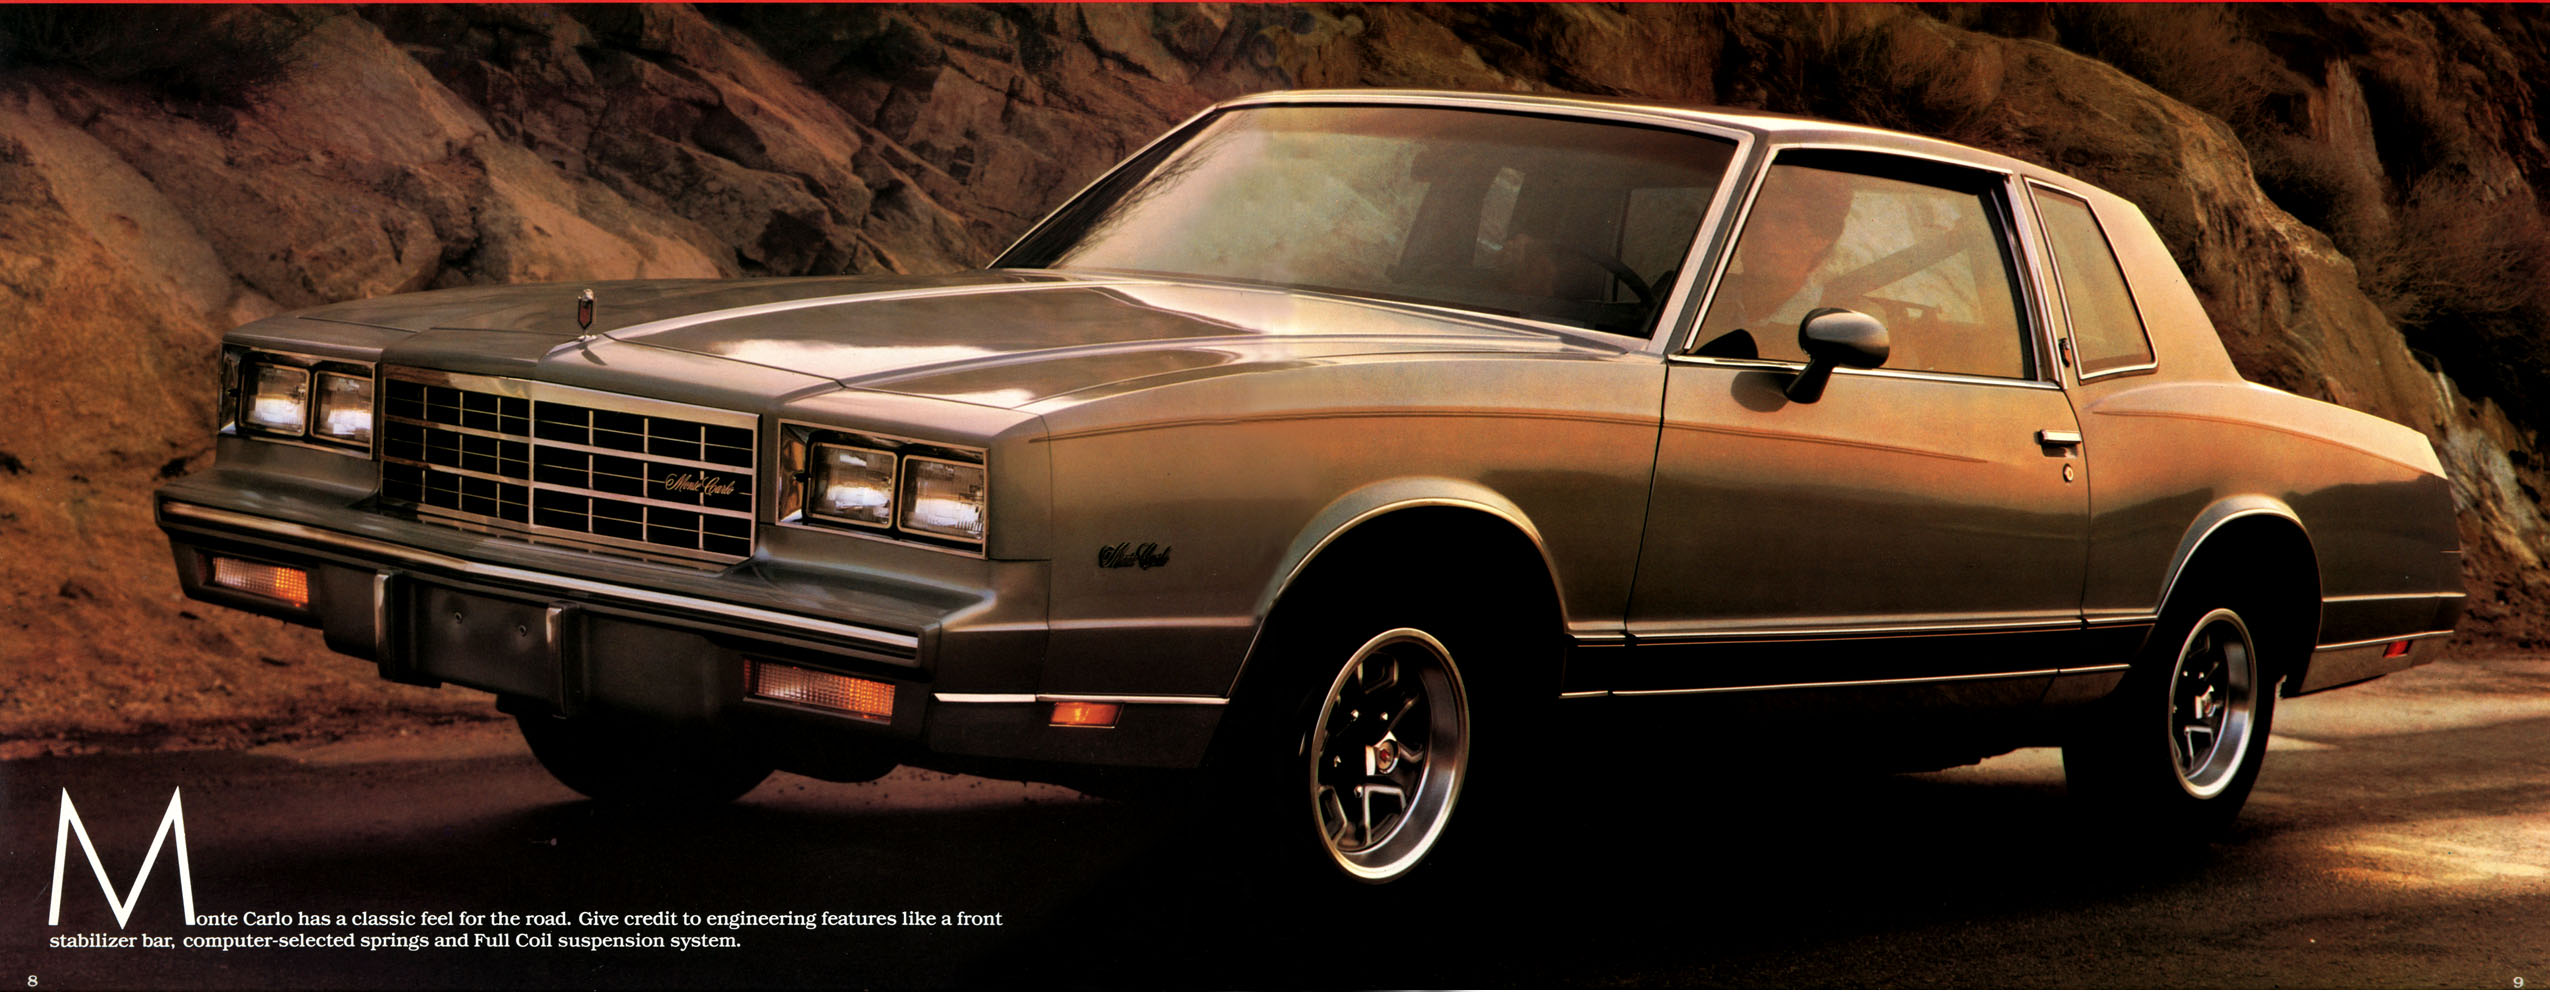 1983 Chevrolet Monte Carlo Brochure Page 6